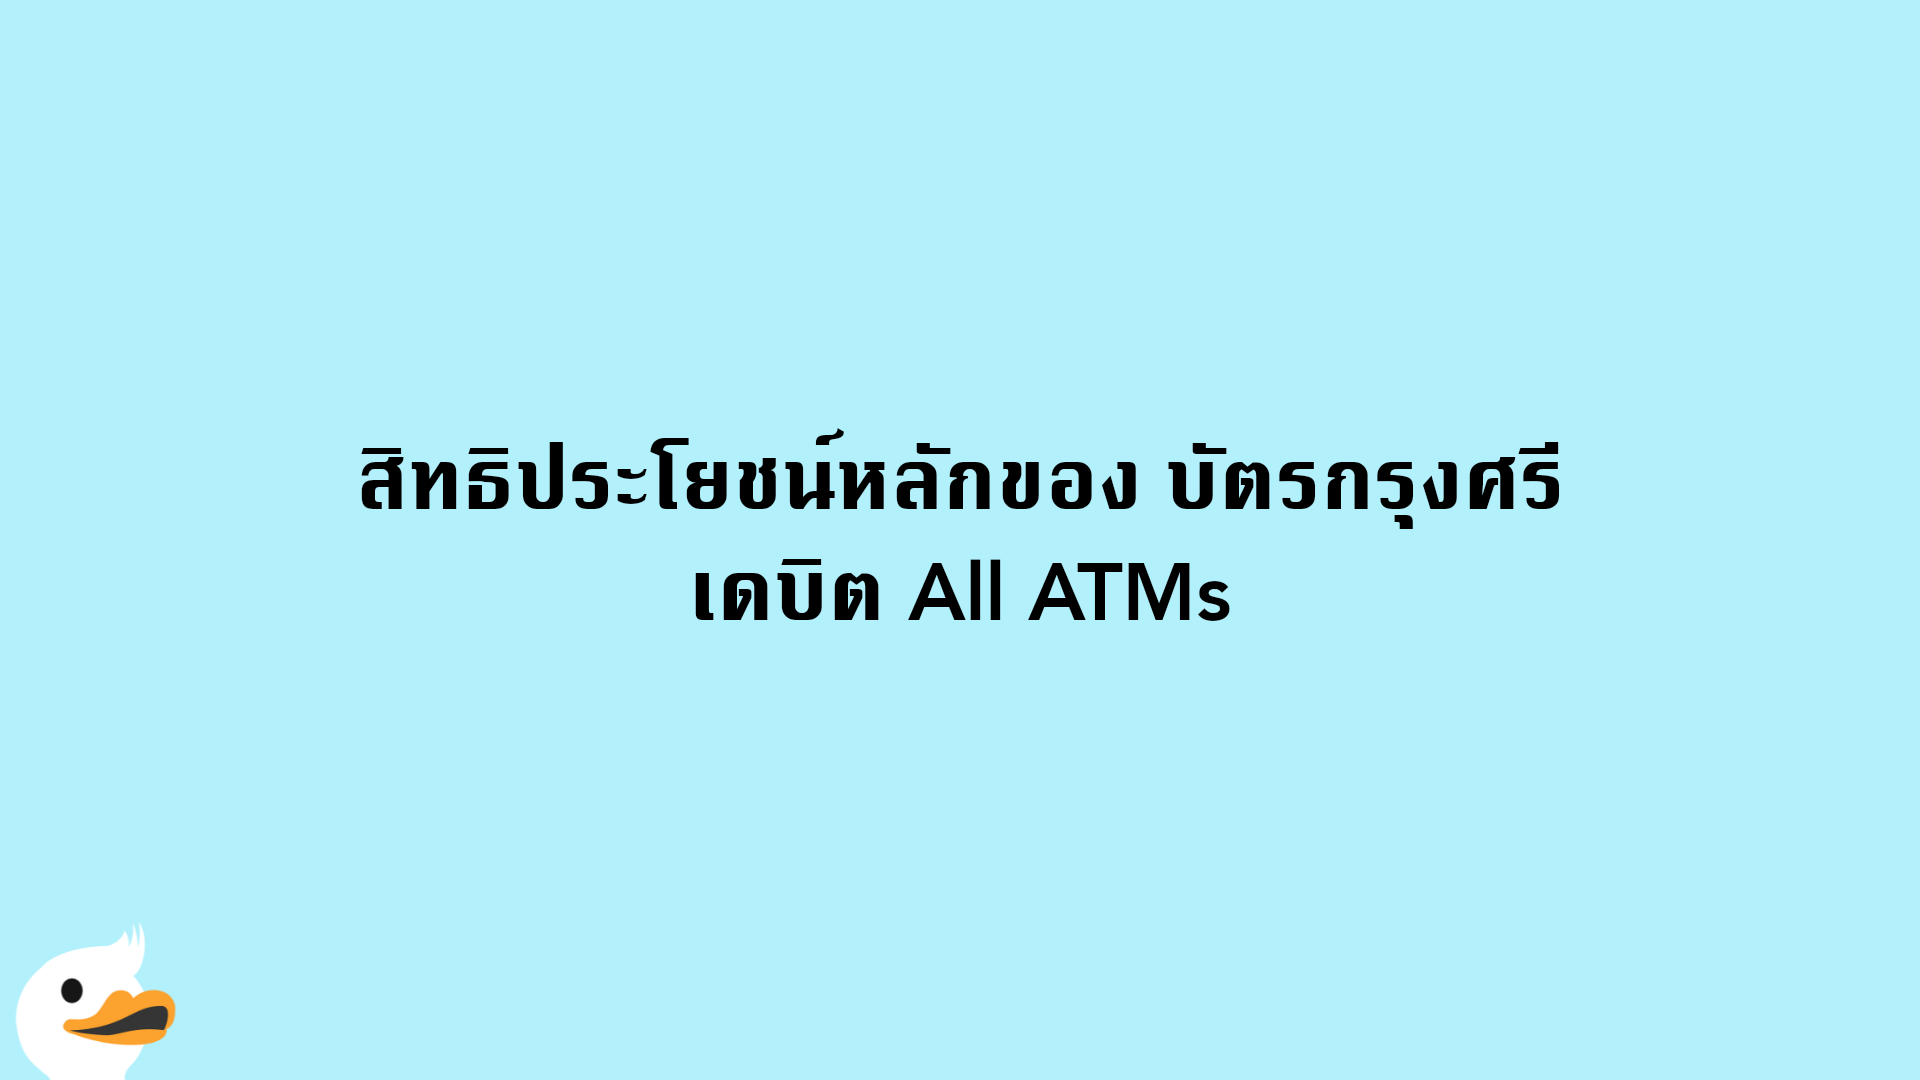 สิทธิประโยชน์หลักของ บัตรกรุงศรี เดบิต All ATMs